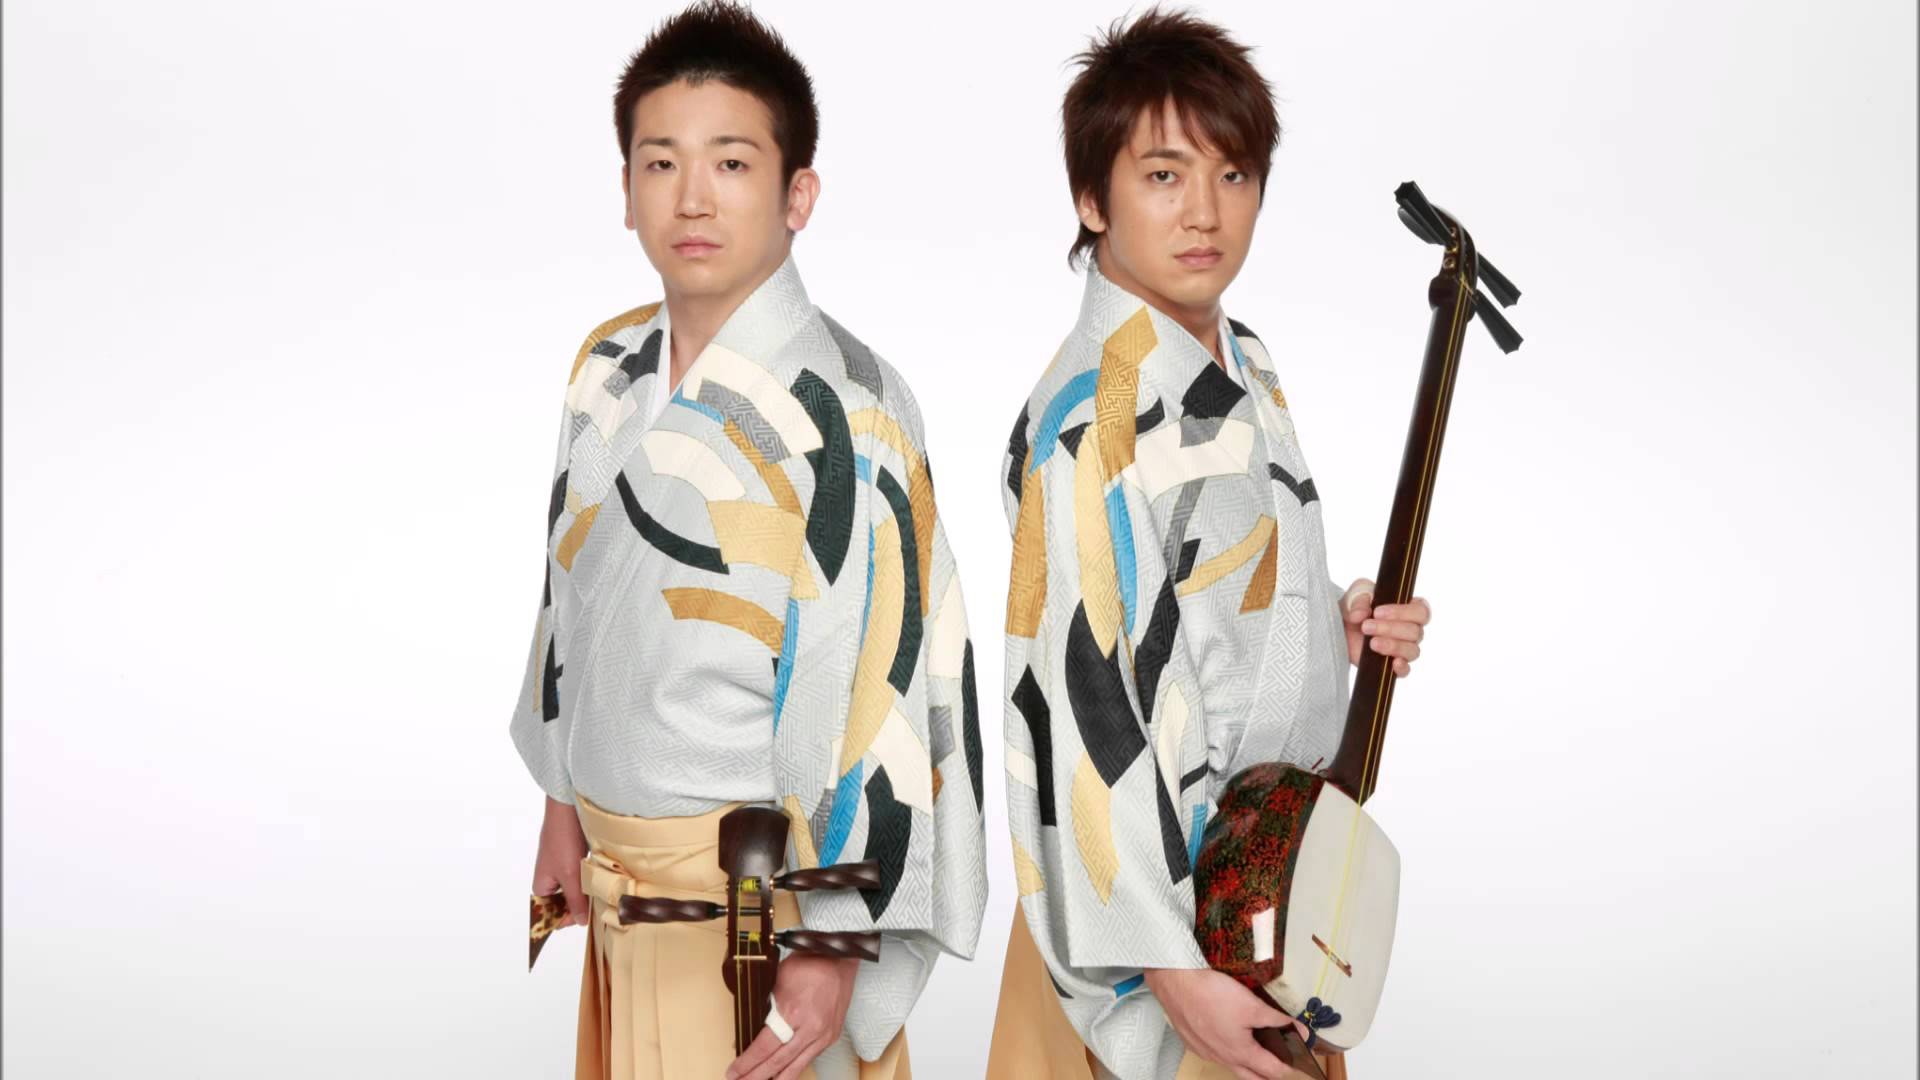 The Yoshida Brothers